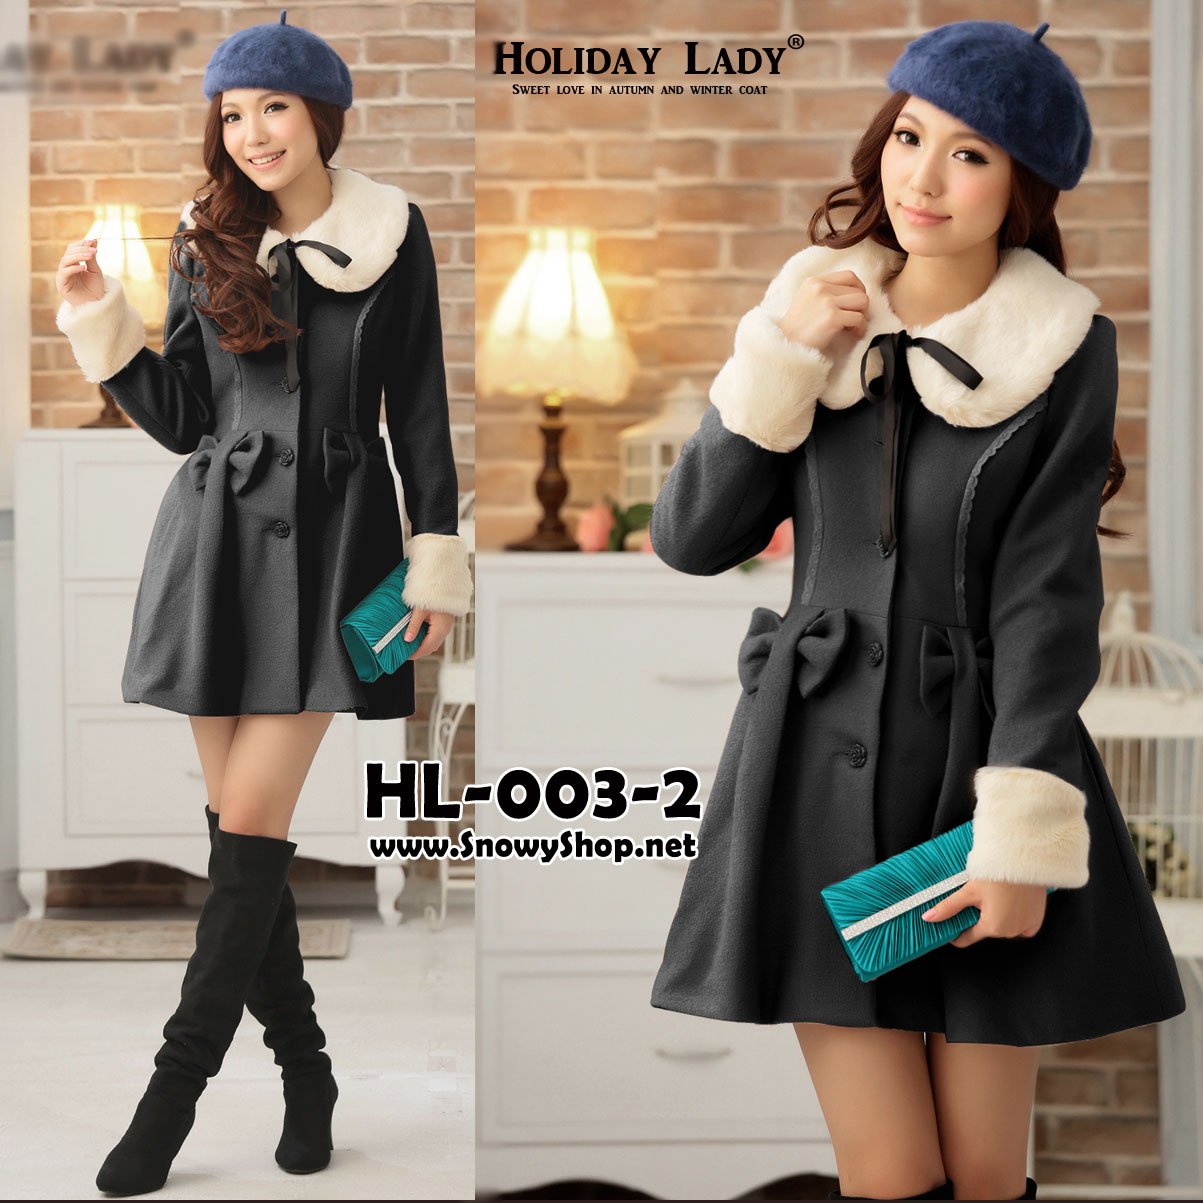  [[*พร้อมส่ง S,M]] [HL-003-2] Holiday lady เสื้อโค้ทกันหนาวสีดำผ้าวูลหนา แต่งโบว์ ปกขนเฟอร์สีขาวสวย เฟอร์ถอดได้ด้วยค่ะ